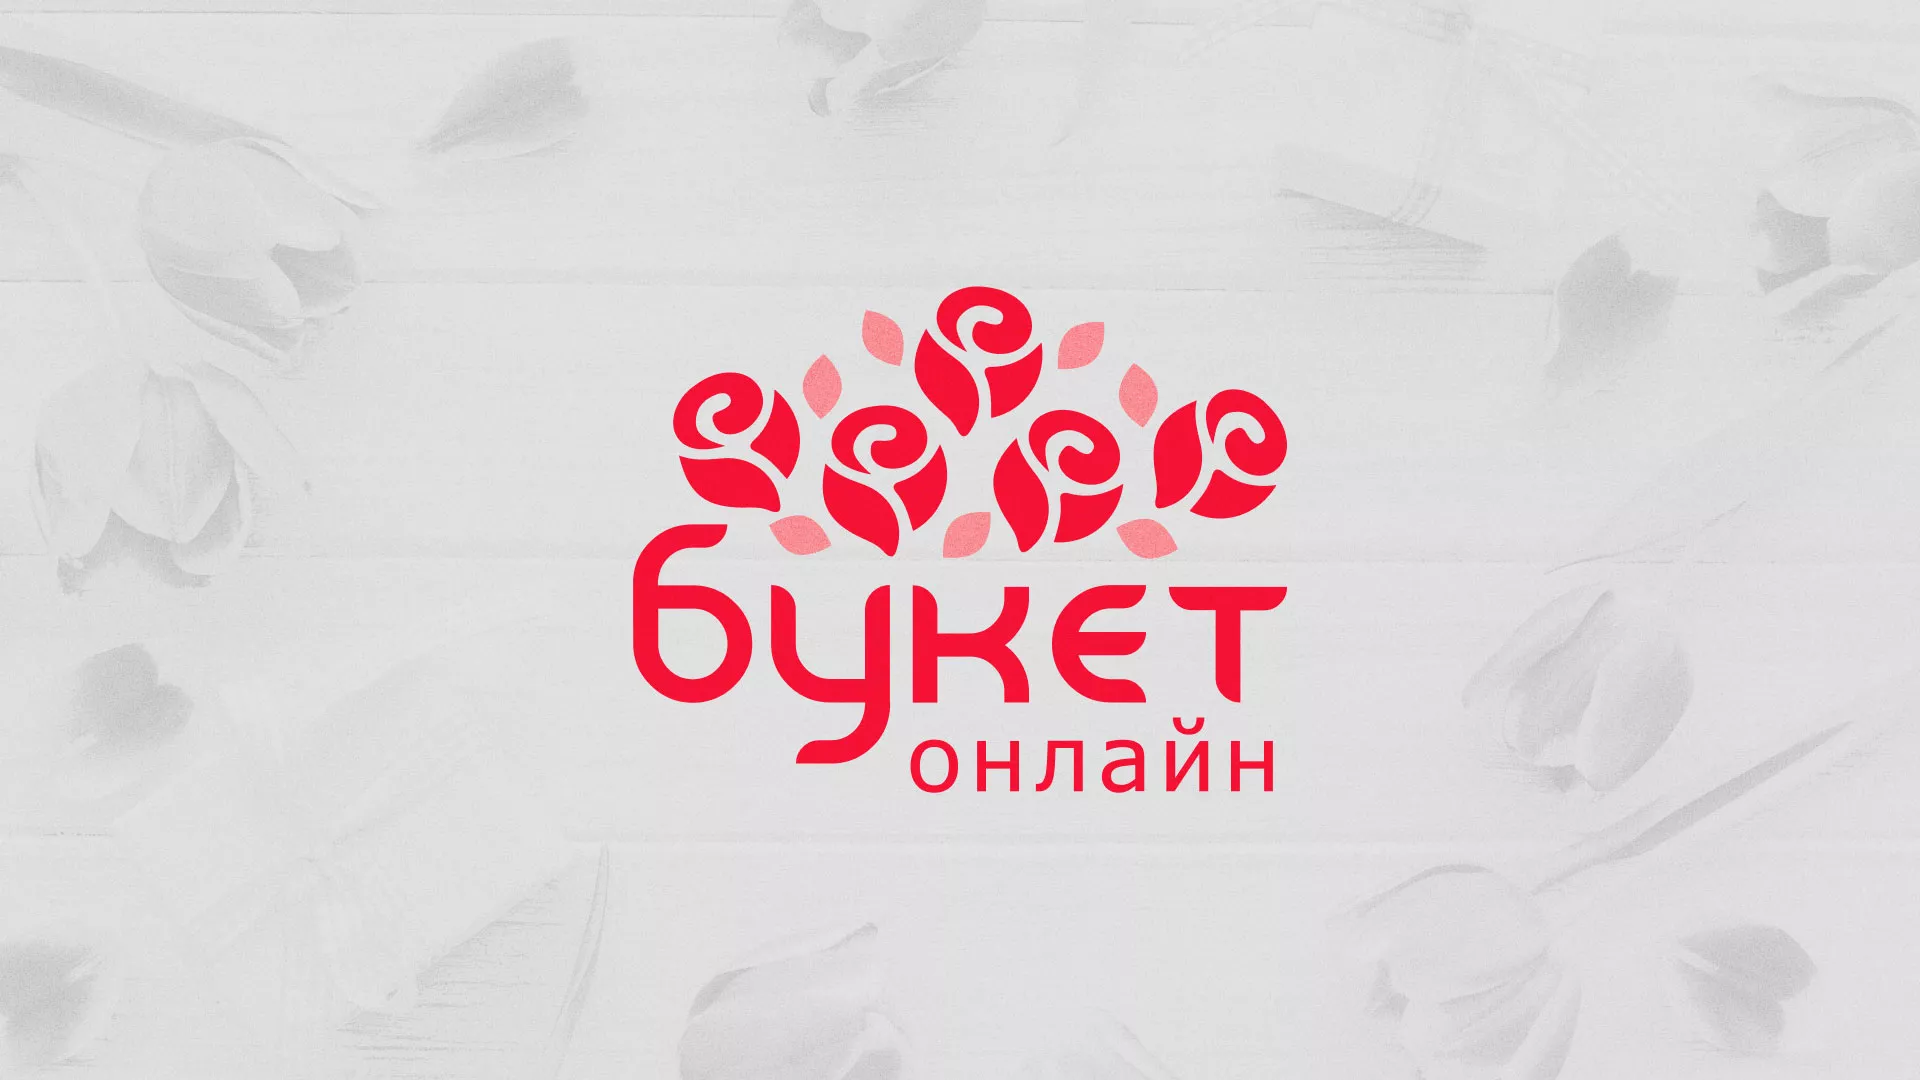 Создание интернет-магазина «Букет-онлайн» по цветам в Демидове